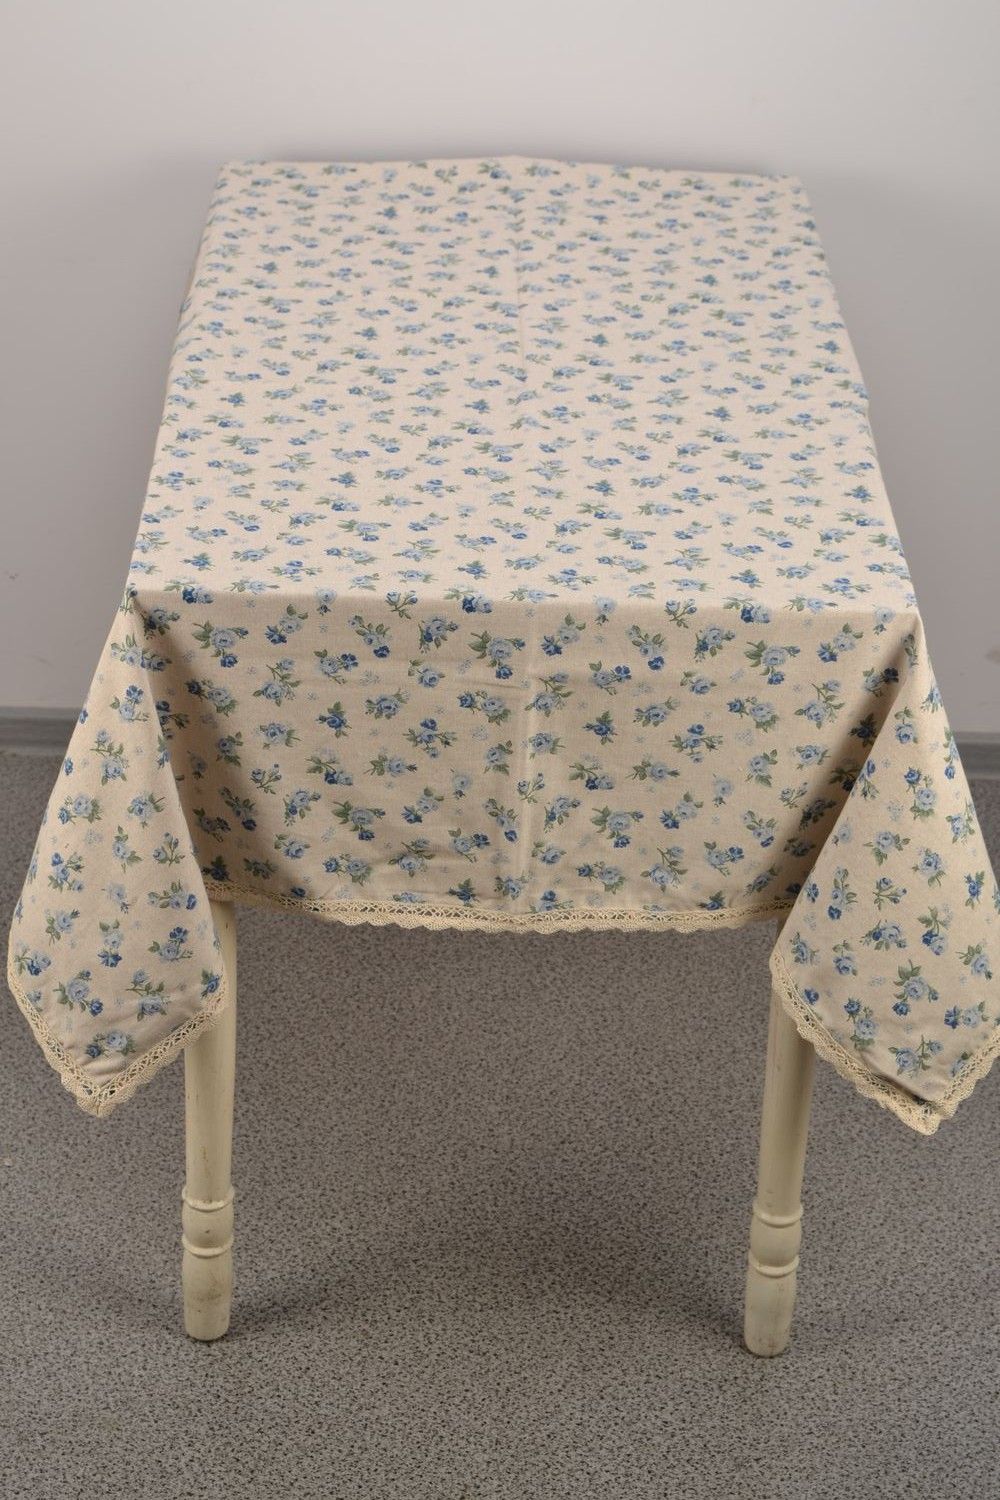 Скатерть на прямоугольный стол из хлопка и полиамида с цветочным принтом фото 4